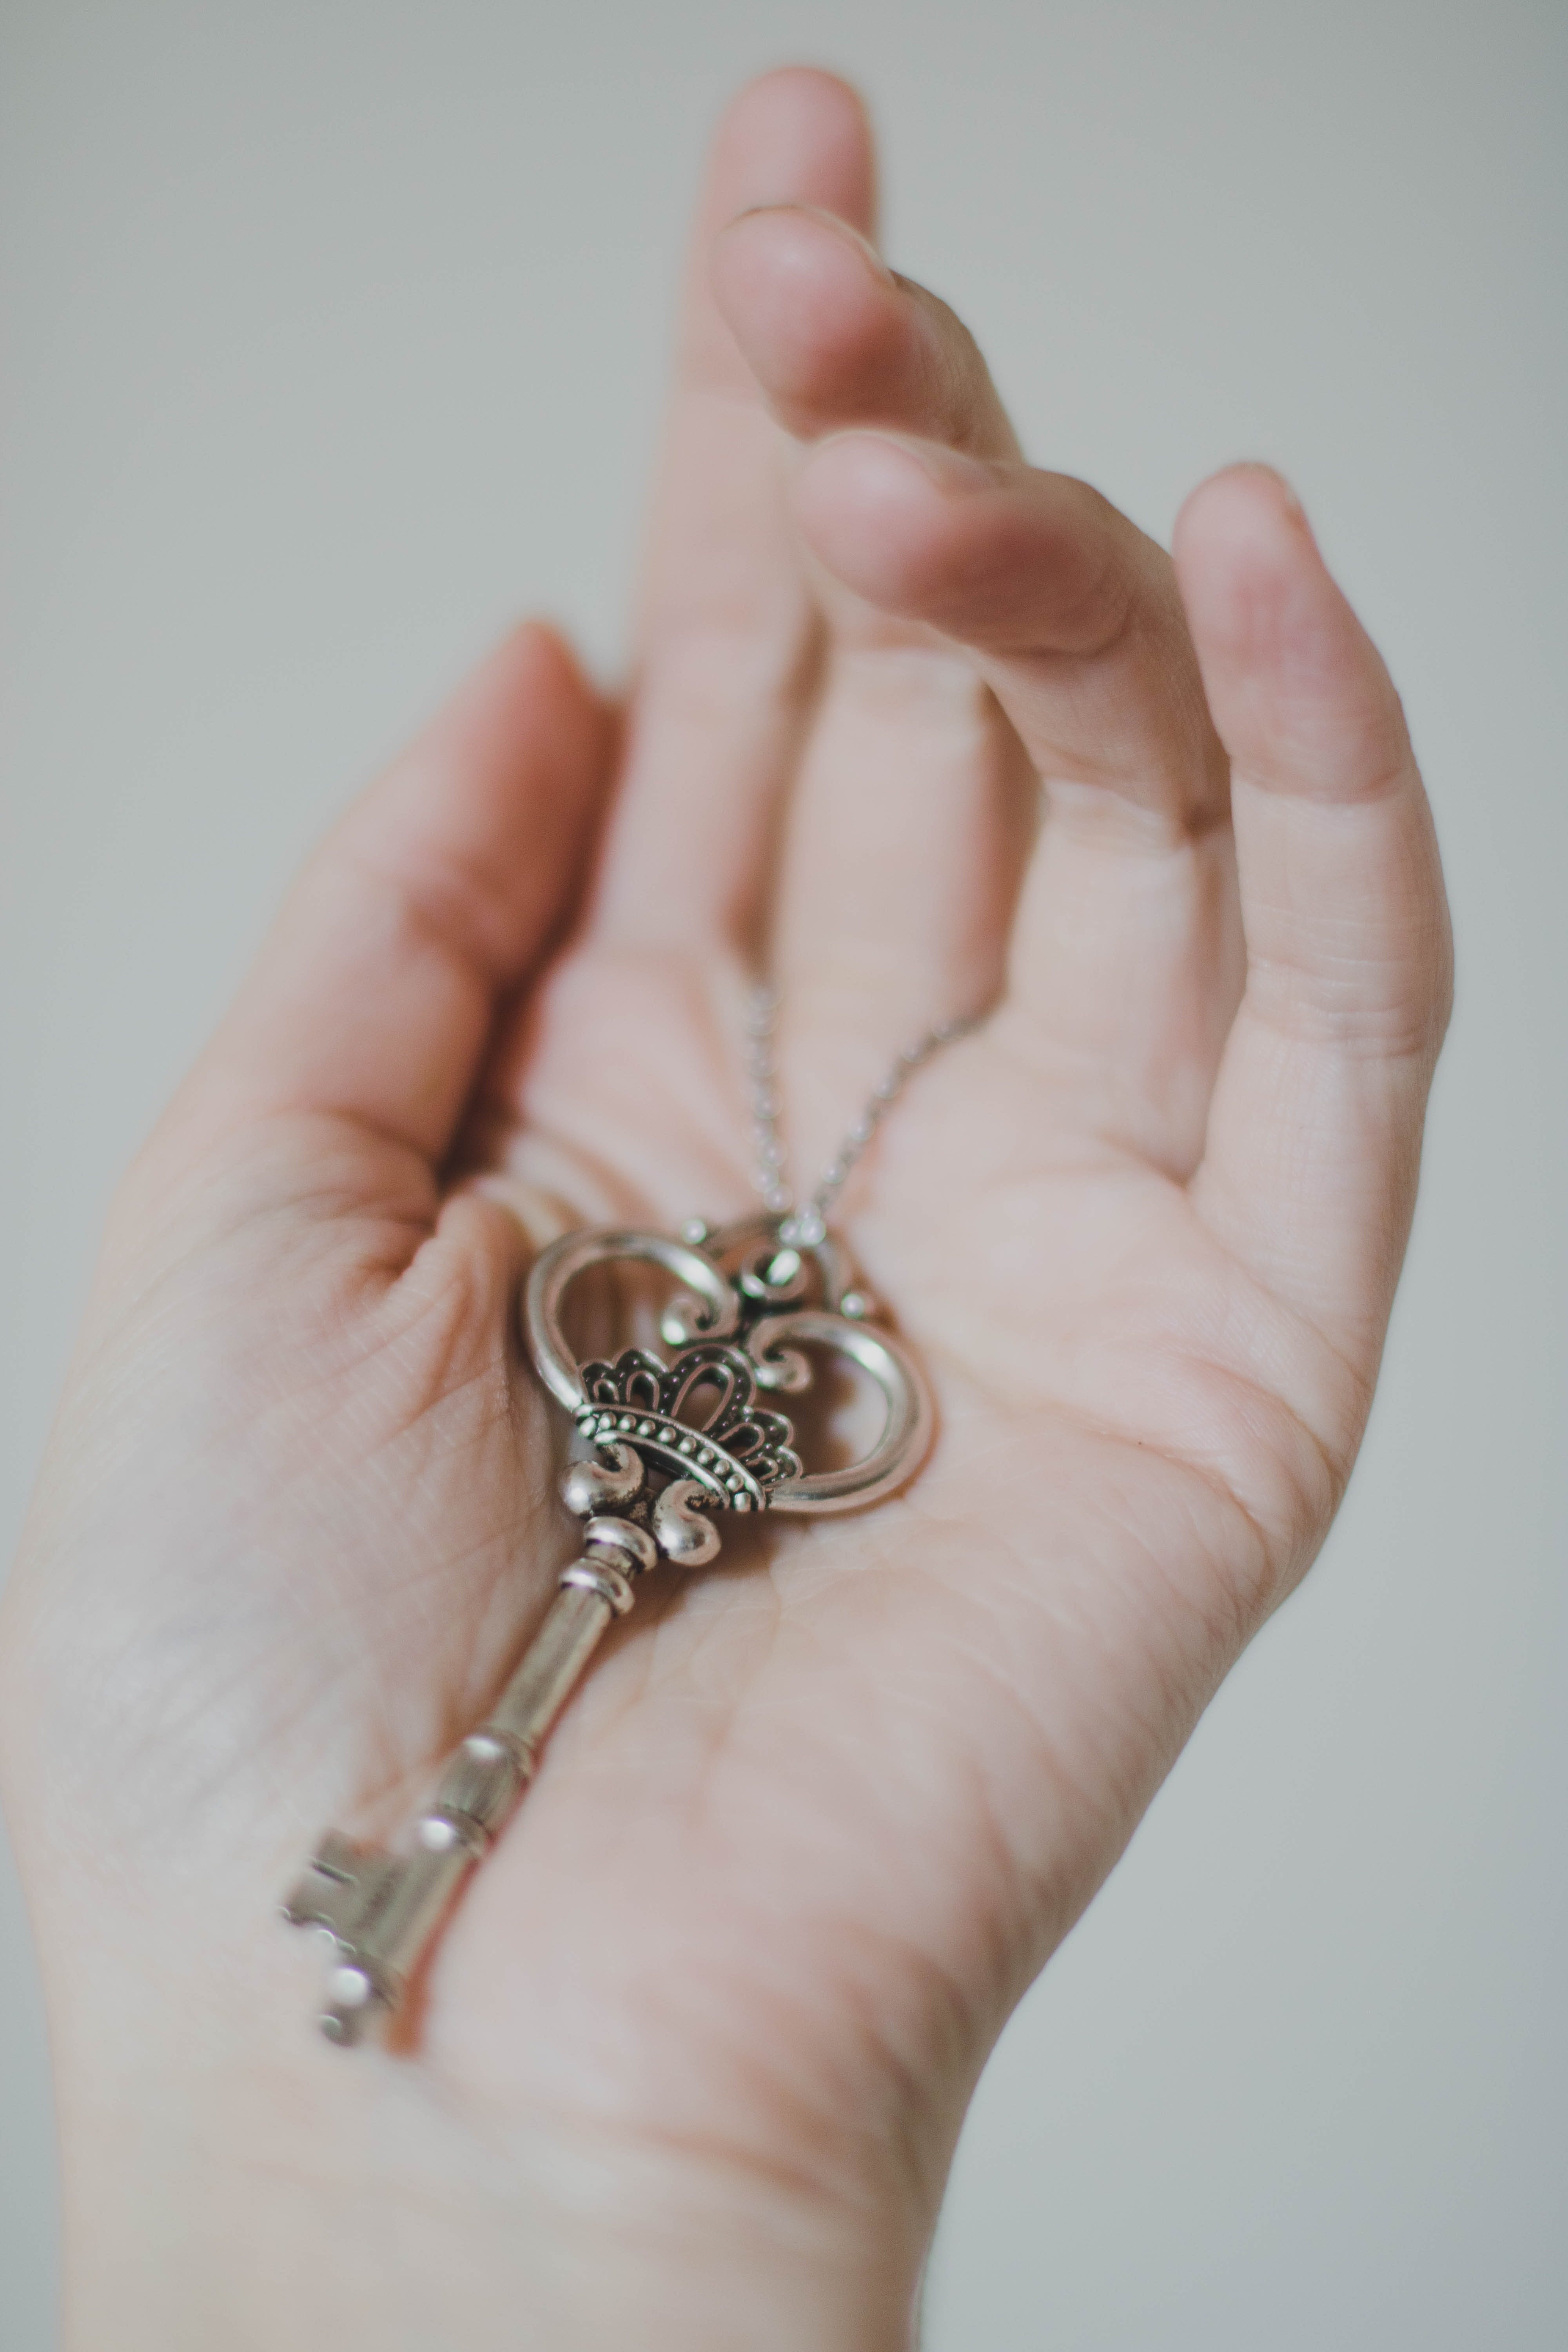 Une main tenant une clé | Source : Pexels